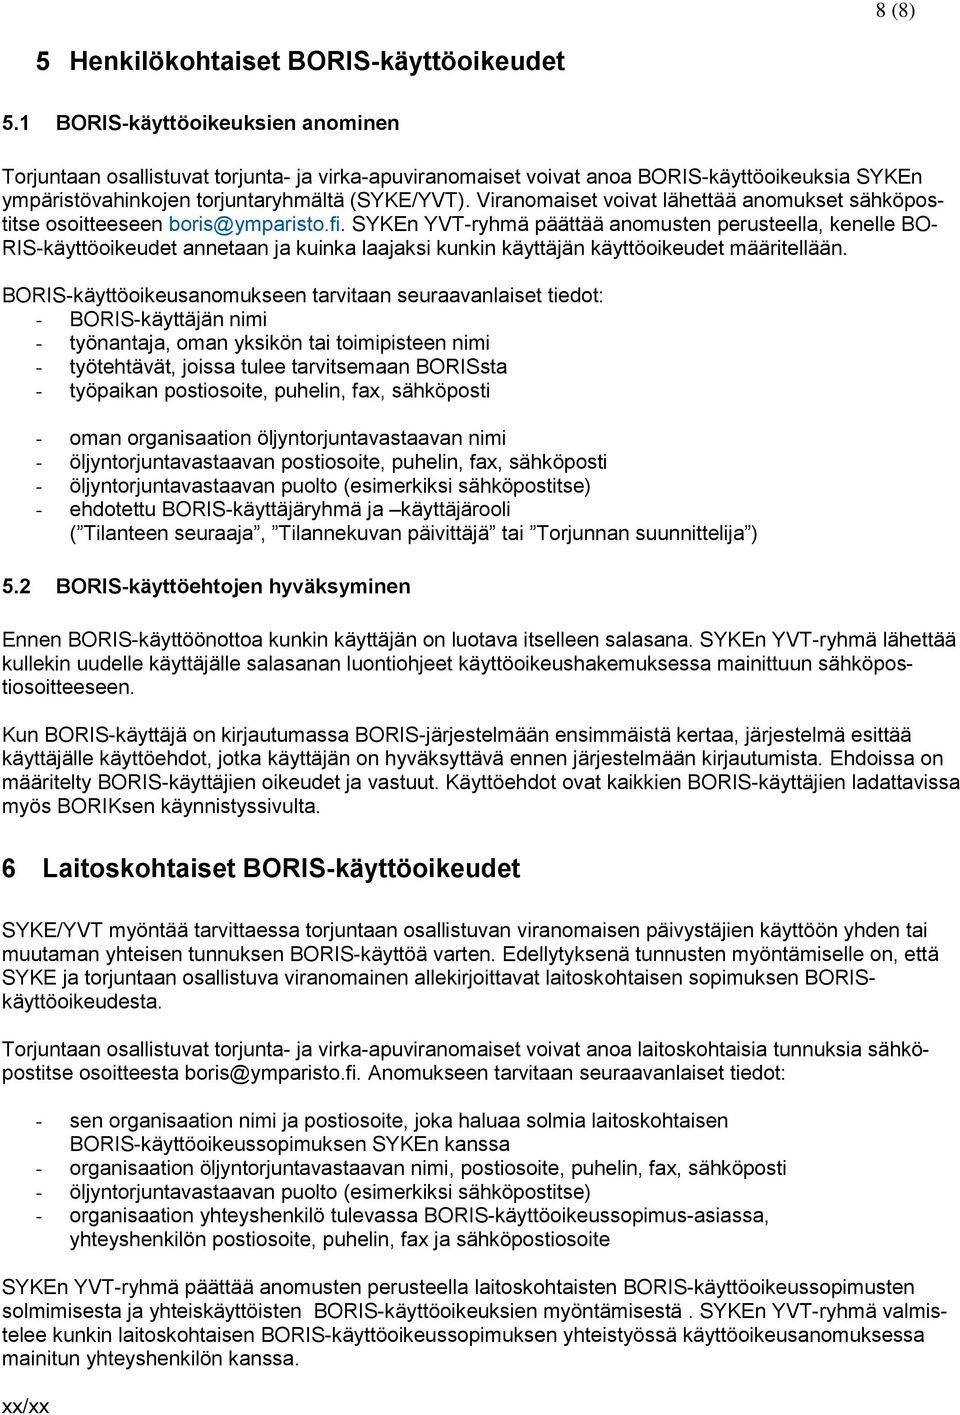 Viranomaiset voivat lähettää anomukset sähköpostitse osoitteeseen boris@ymparisto.fi.